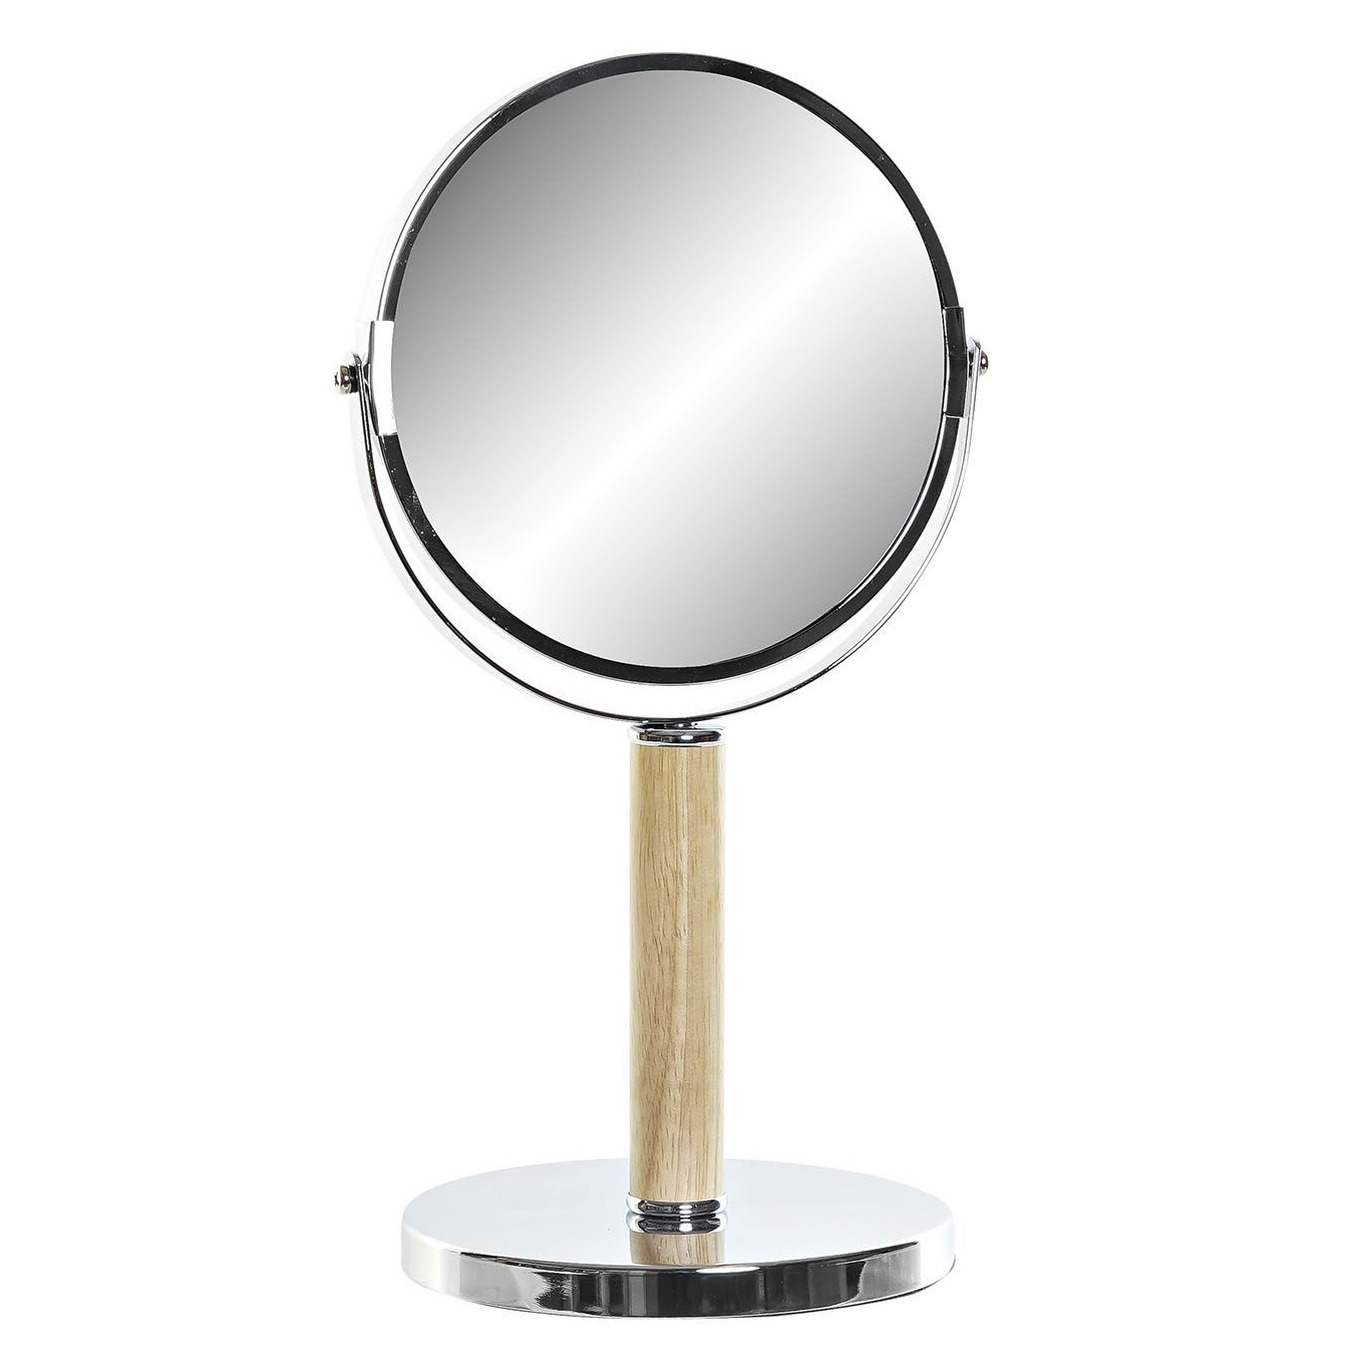 Badkamerspiegel / make-up spiegel rond dubbelzijdig metaal zilver D19 x H34 cm